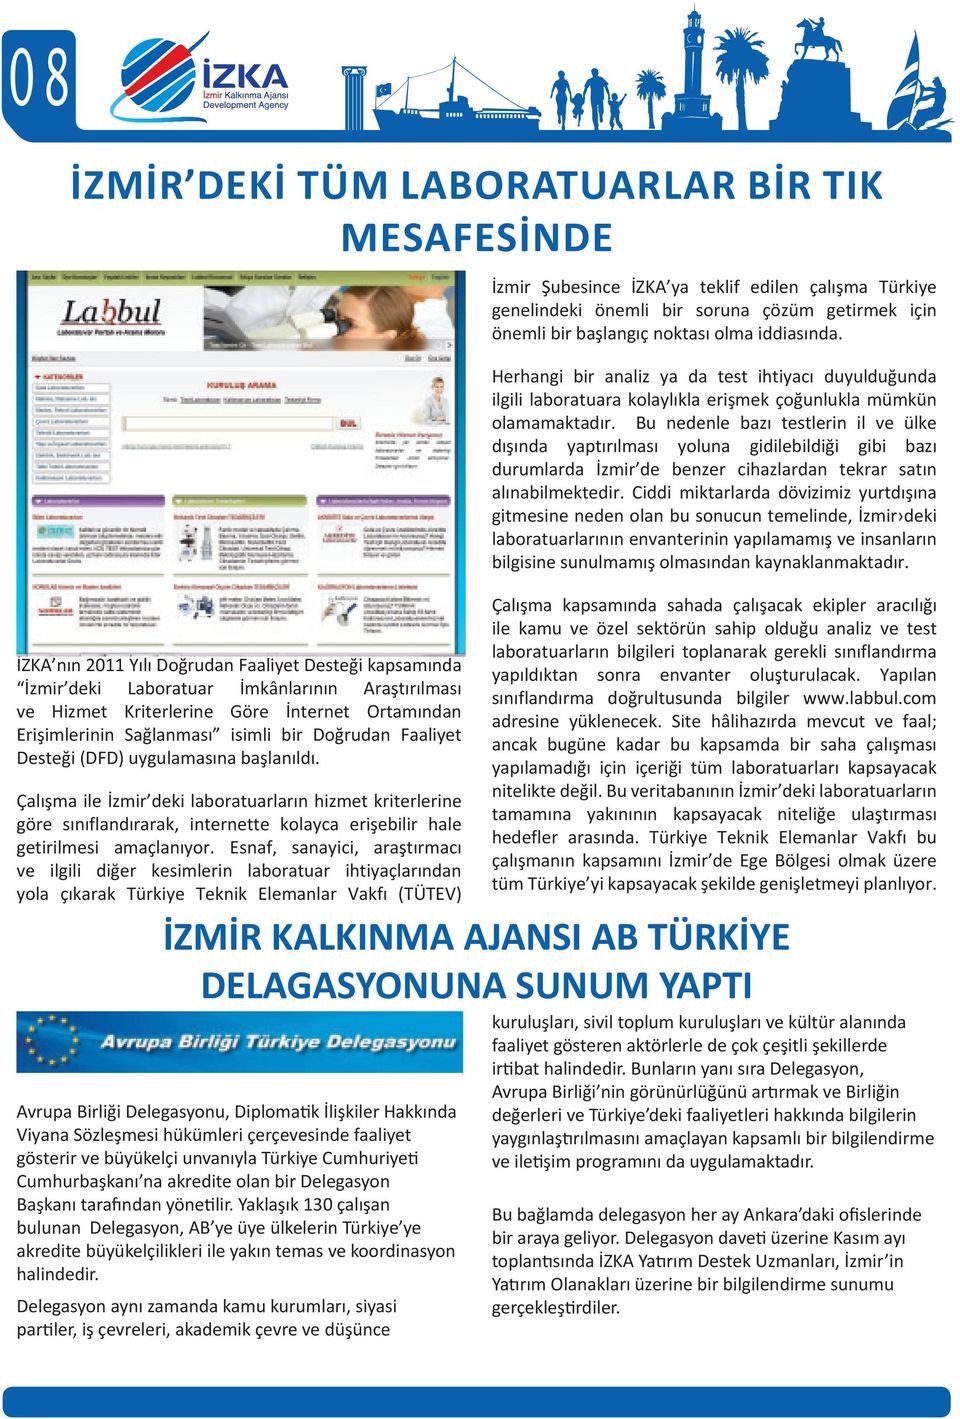 Çalışma ile İzmir deki laboratuarların hizmet kriterlerine göre sınıflandırarak, internette kolayca erişebilir hale getirilmesi amaçlanıyor.